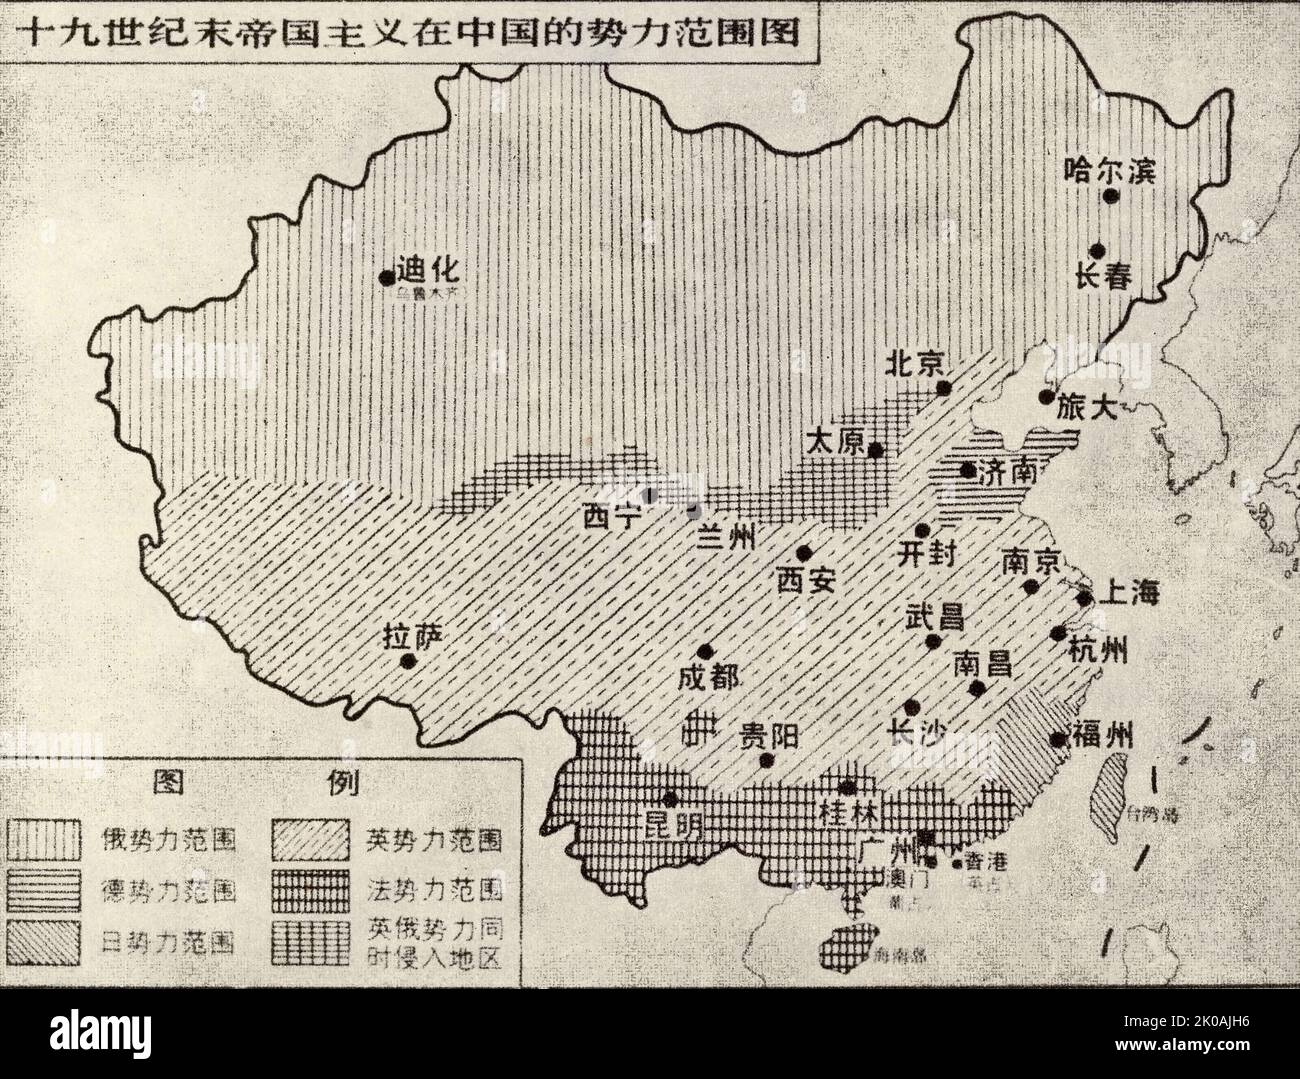 Karte, die das Ausmaß der russischen französischen britischen und anderen imperialistischen Mächte in China während des späten 19.. Jahrhunderts zeigt. Stockfoto